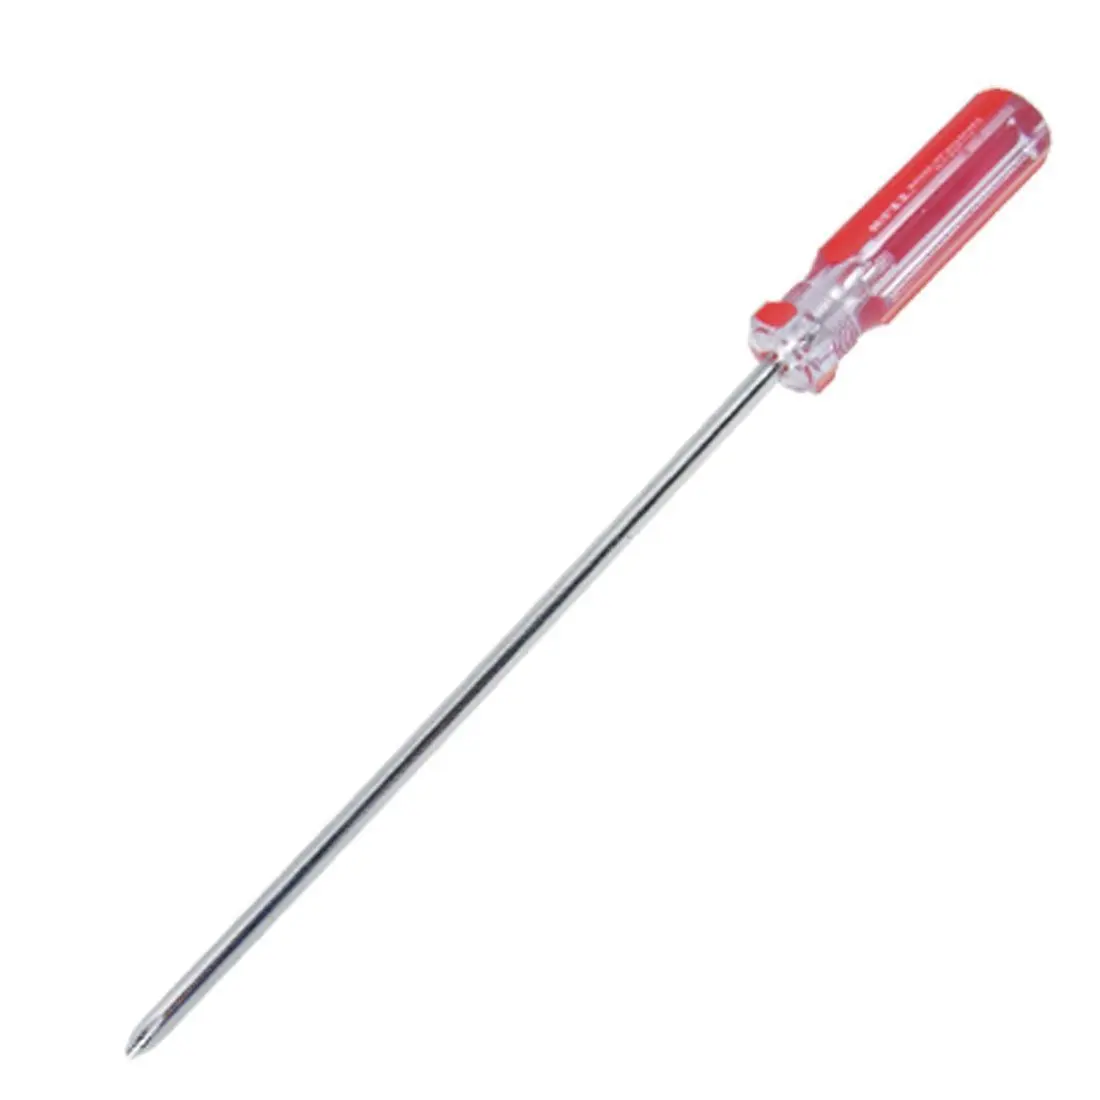 

Отвертка с длинным лезвием и наконечником 6 мм, ручной инструмент, красный + прозрачный